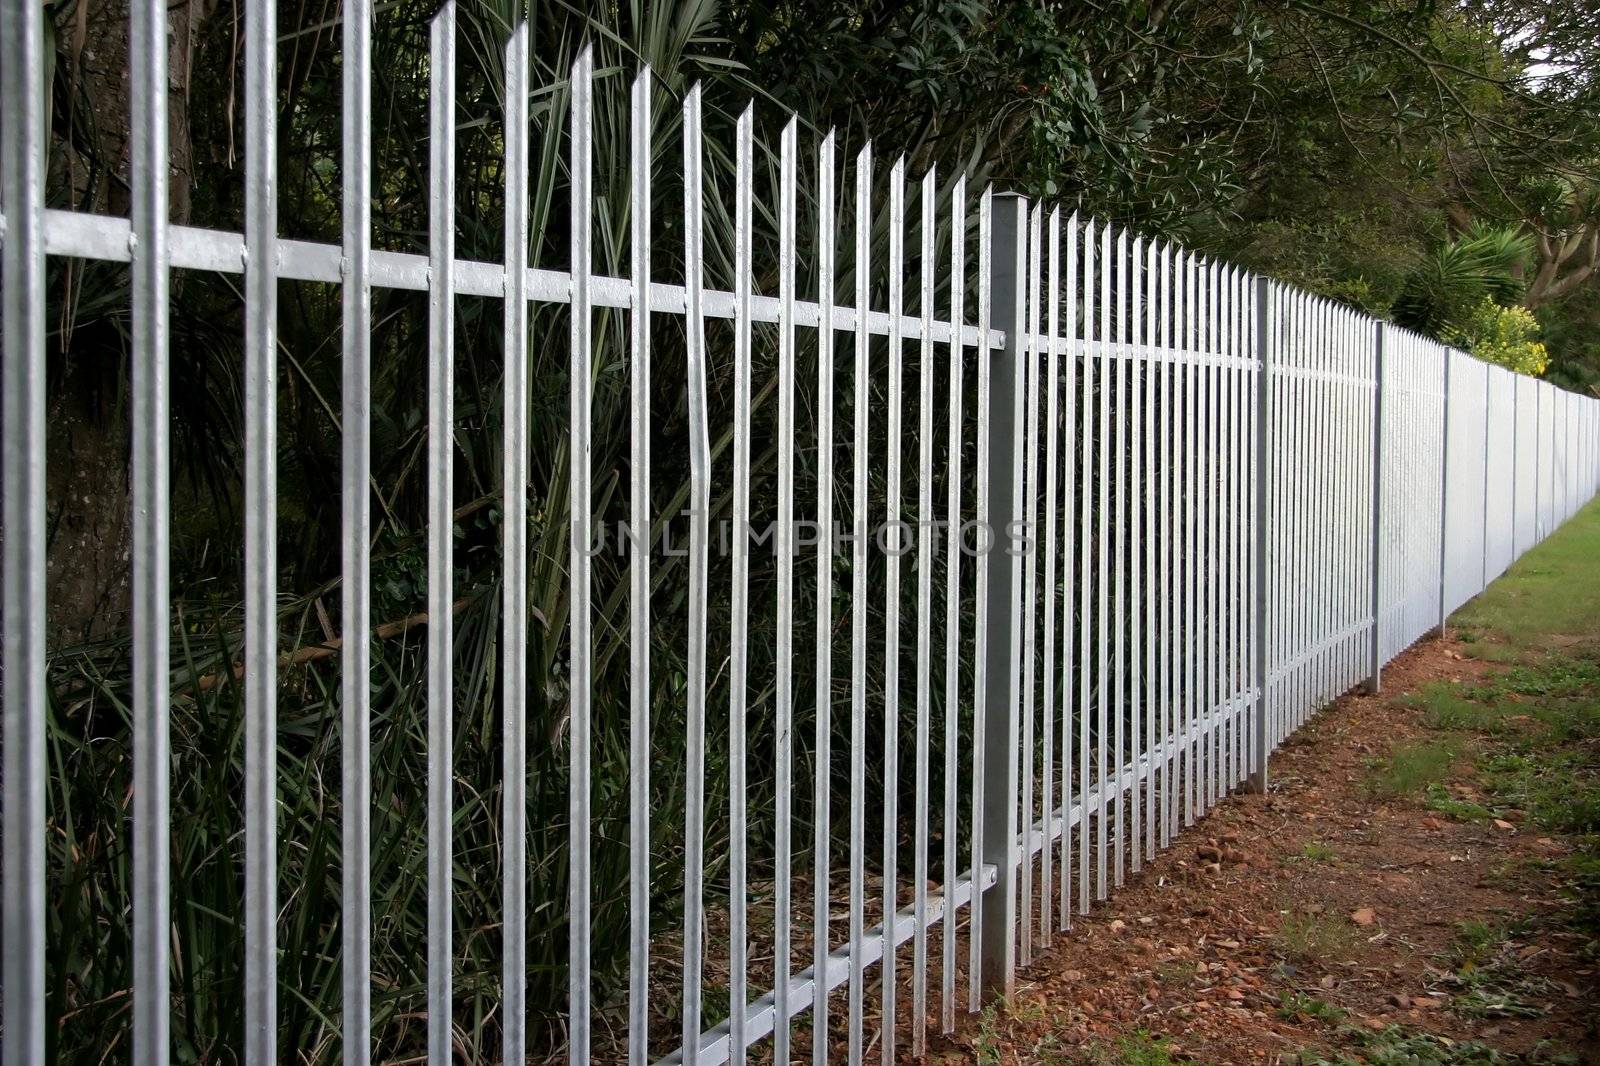 Steel Palisade Fence by fouroaks